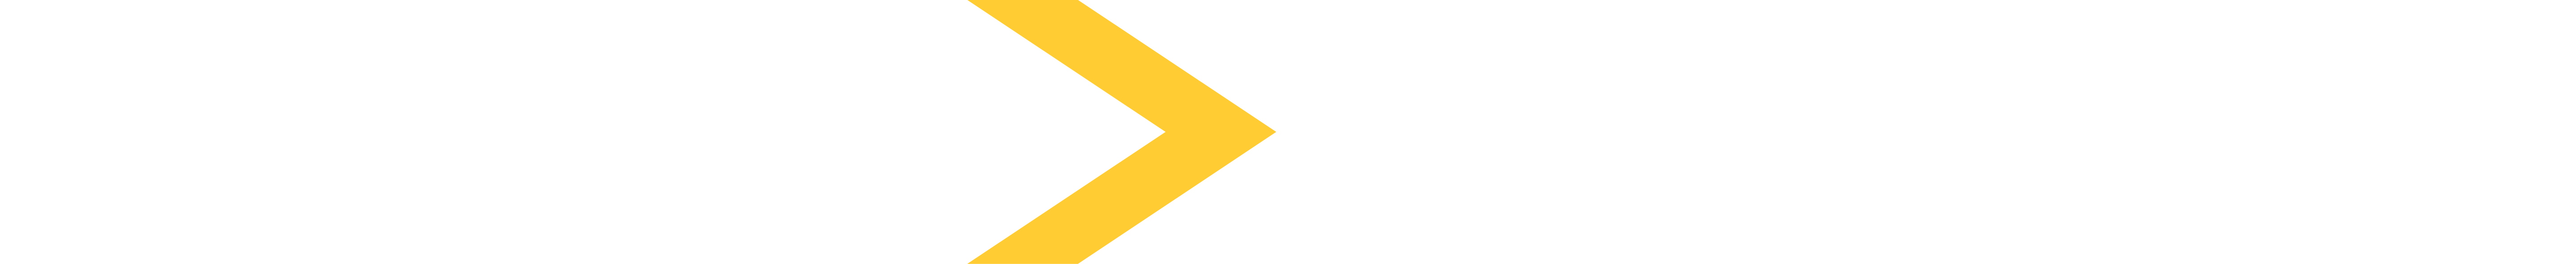 GKN-logo